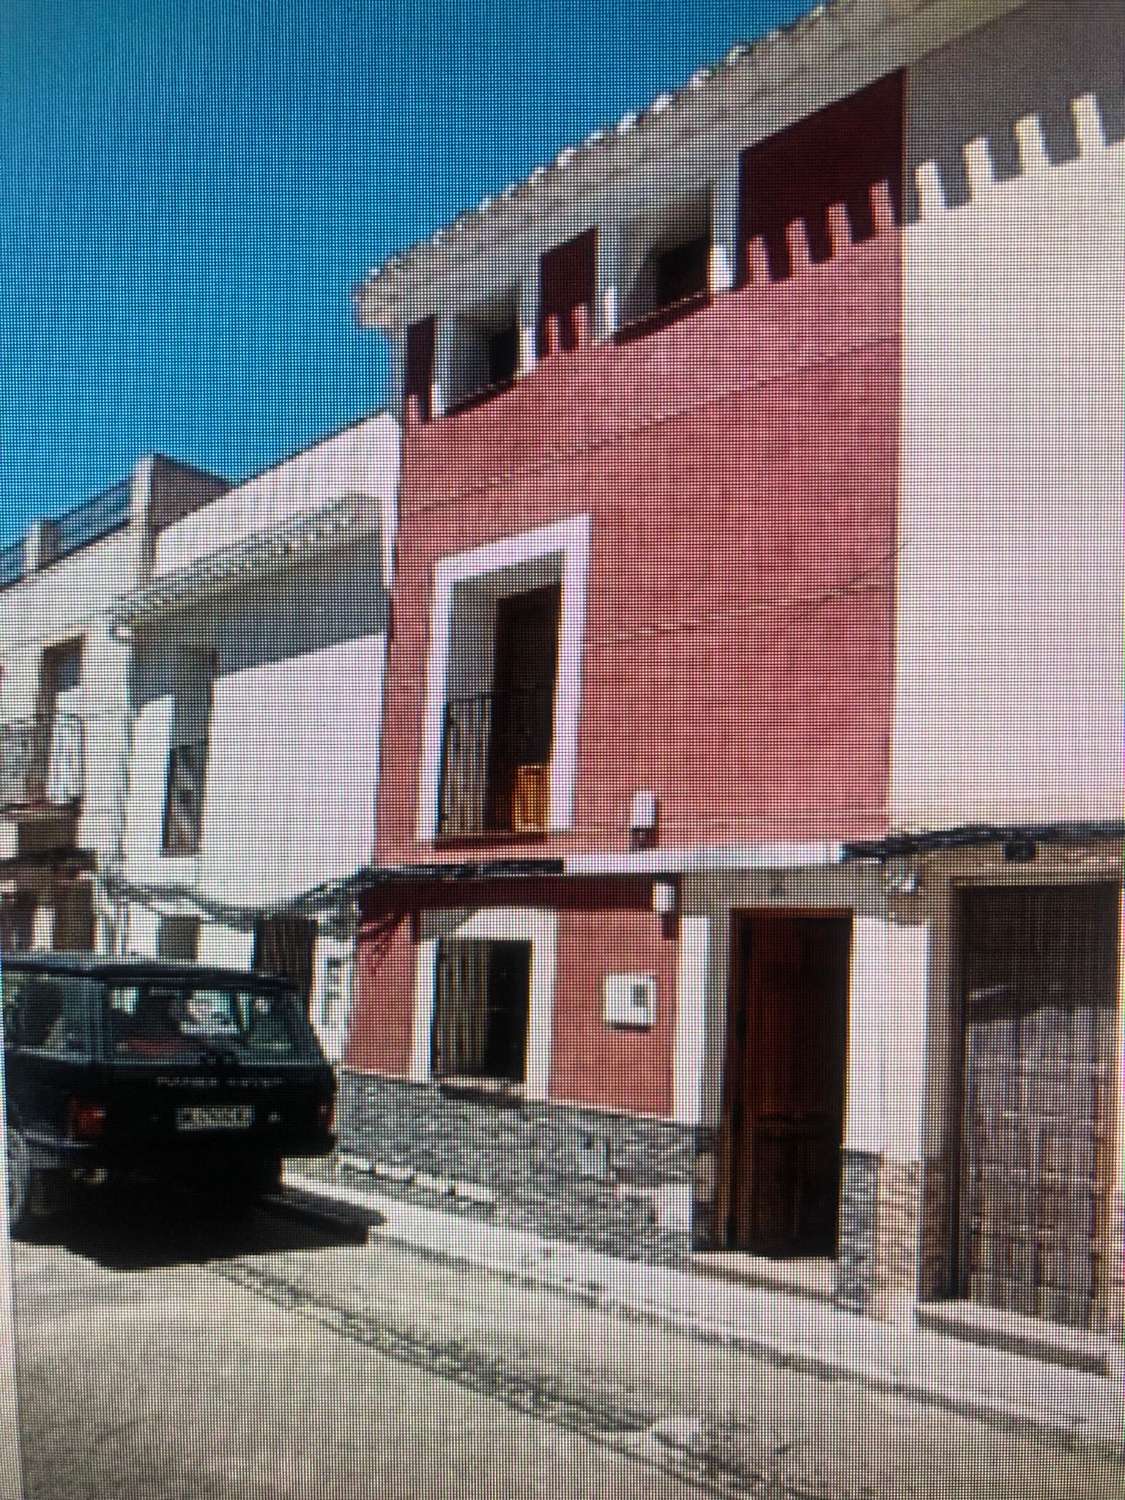 Casa en venta en Cehegín